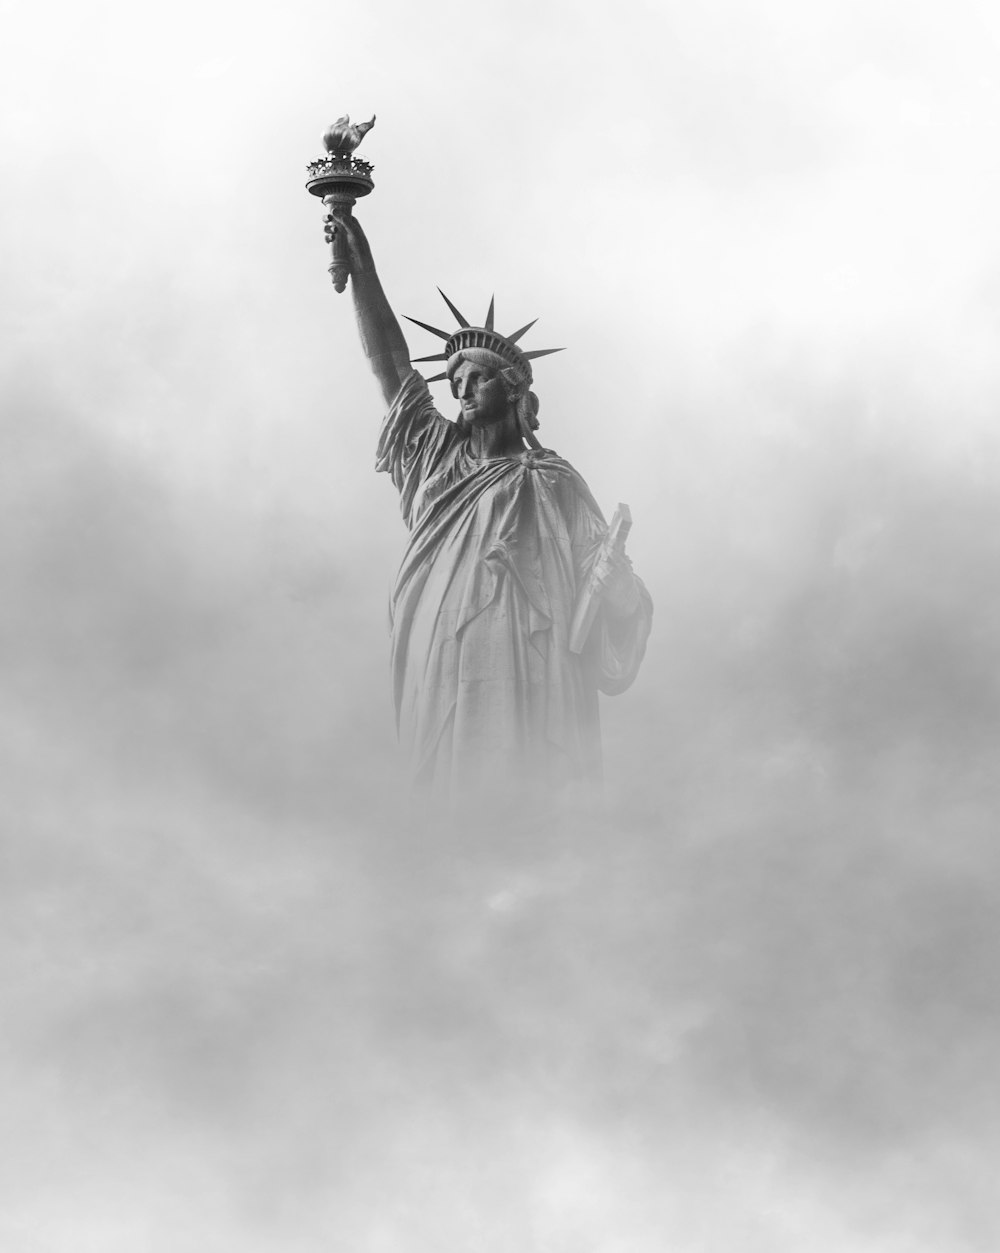 自由の女神像(ニューヨーク)